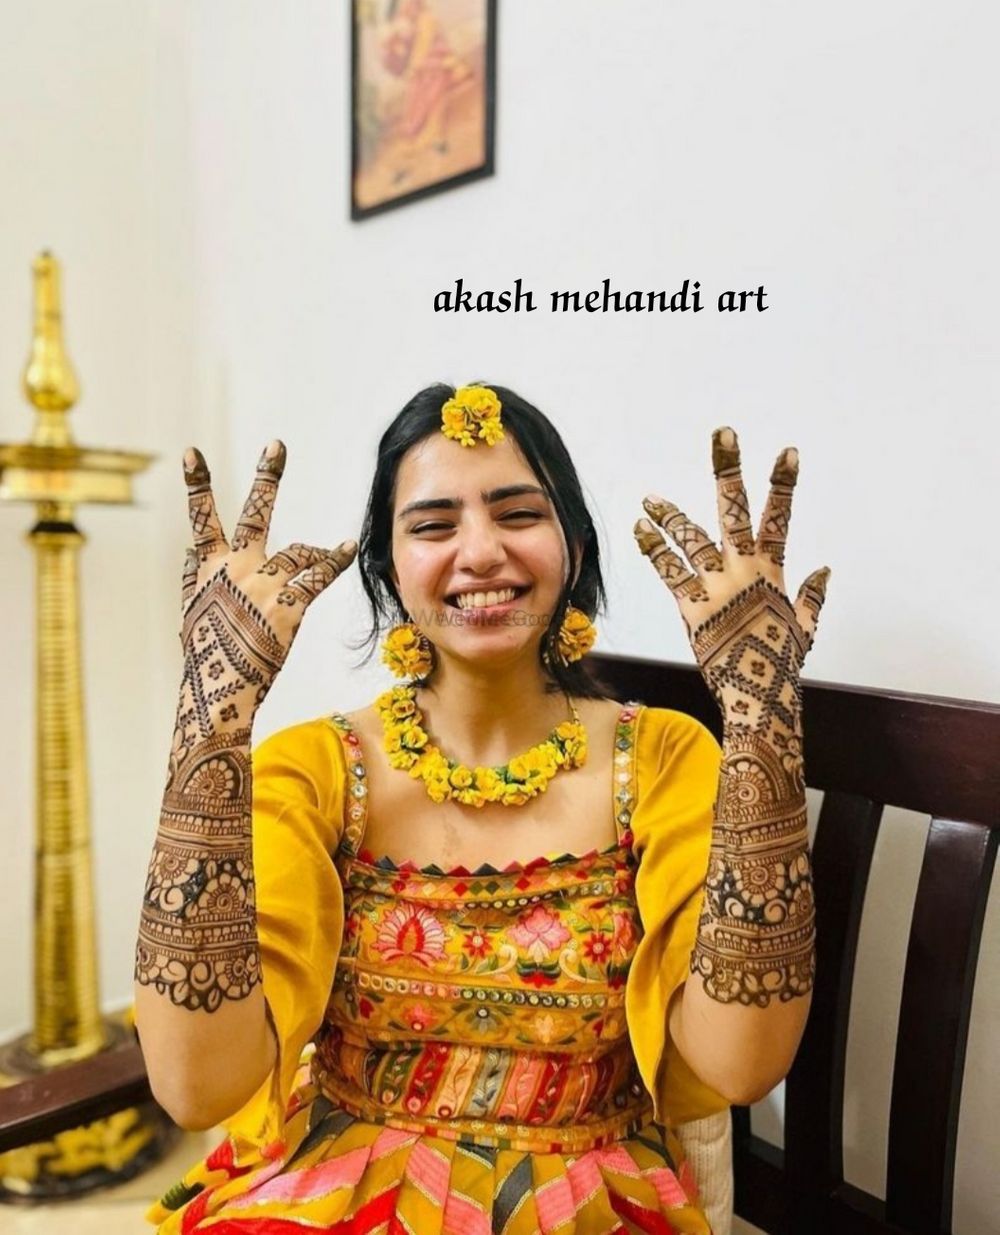 Photo From Akash mehandi art - By AKASH Mehandi Arts